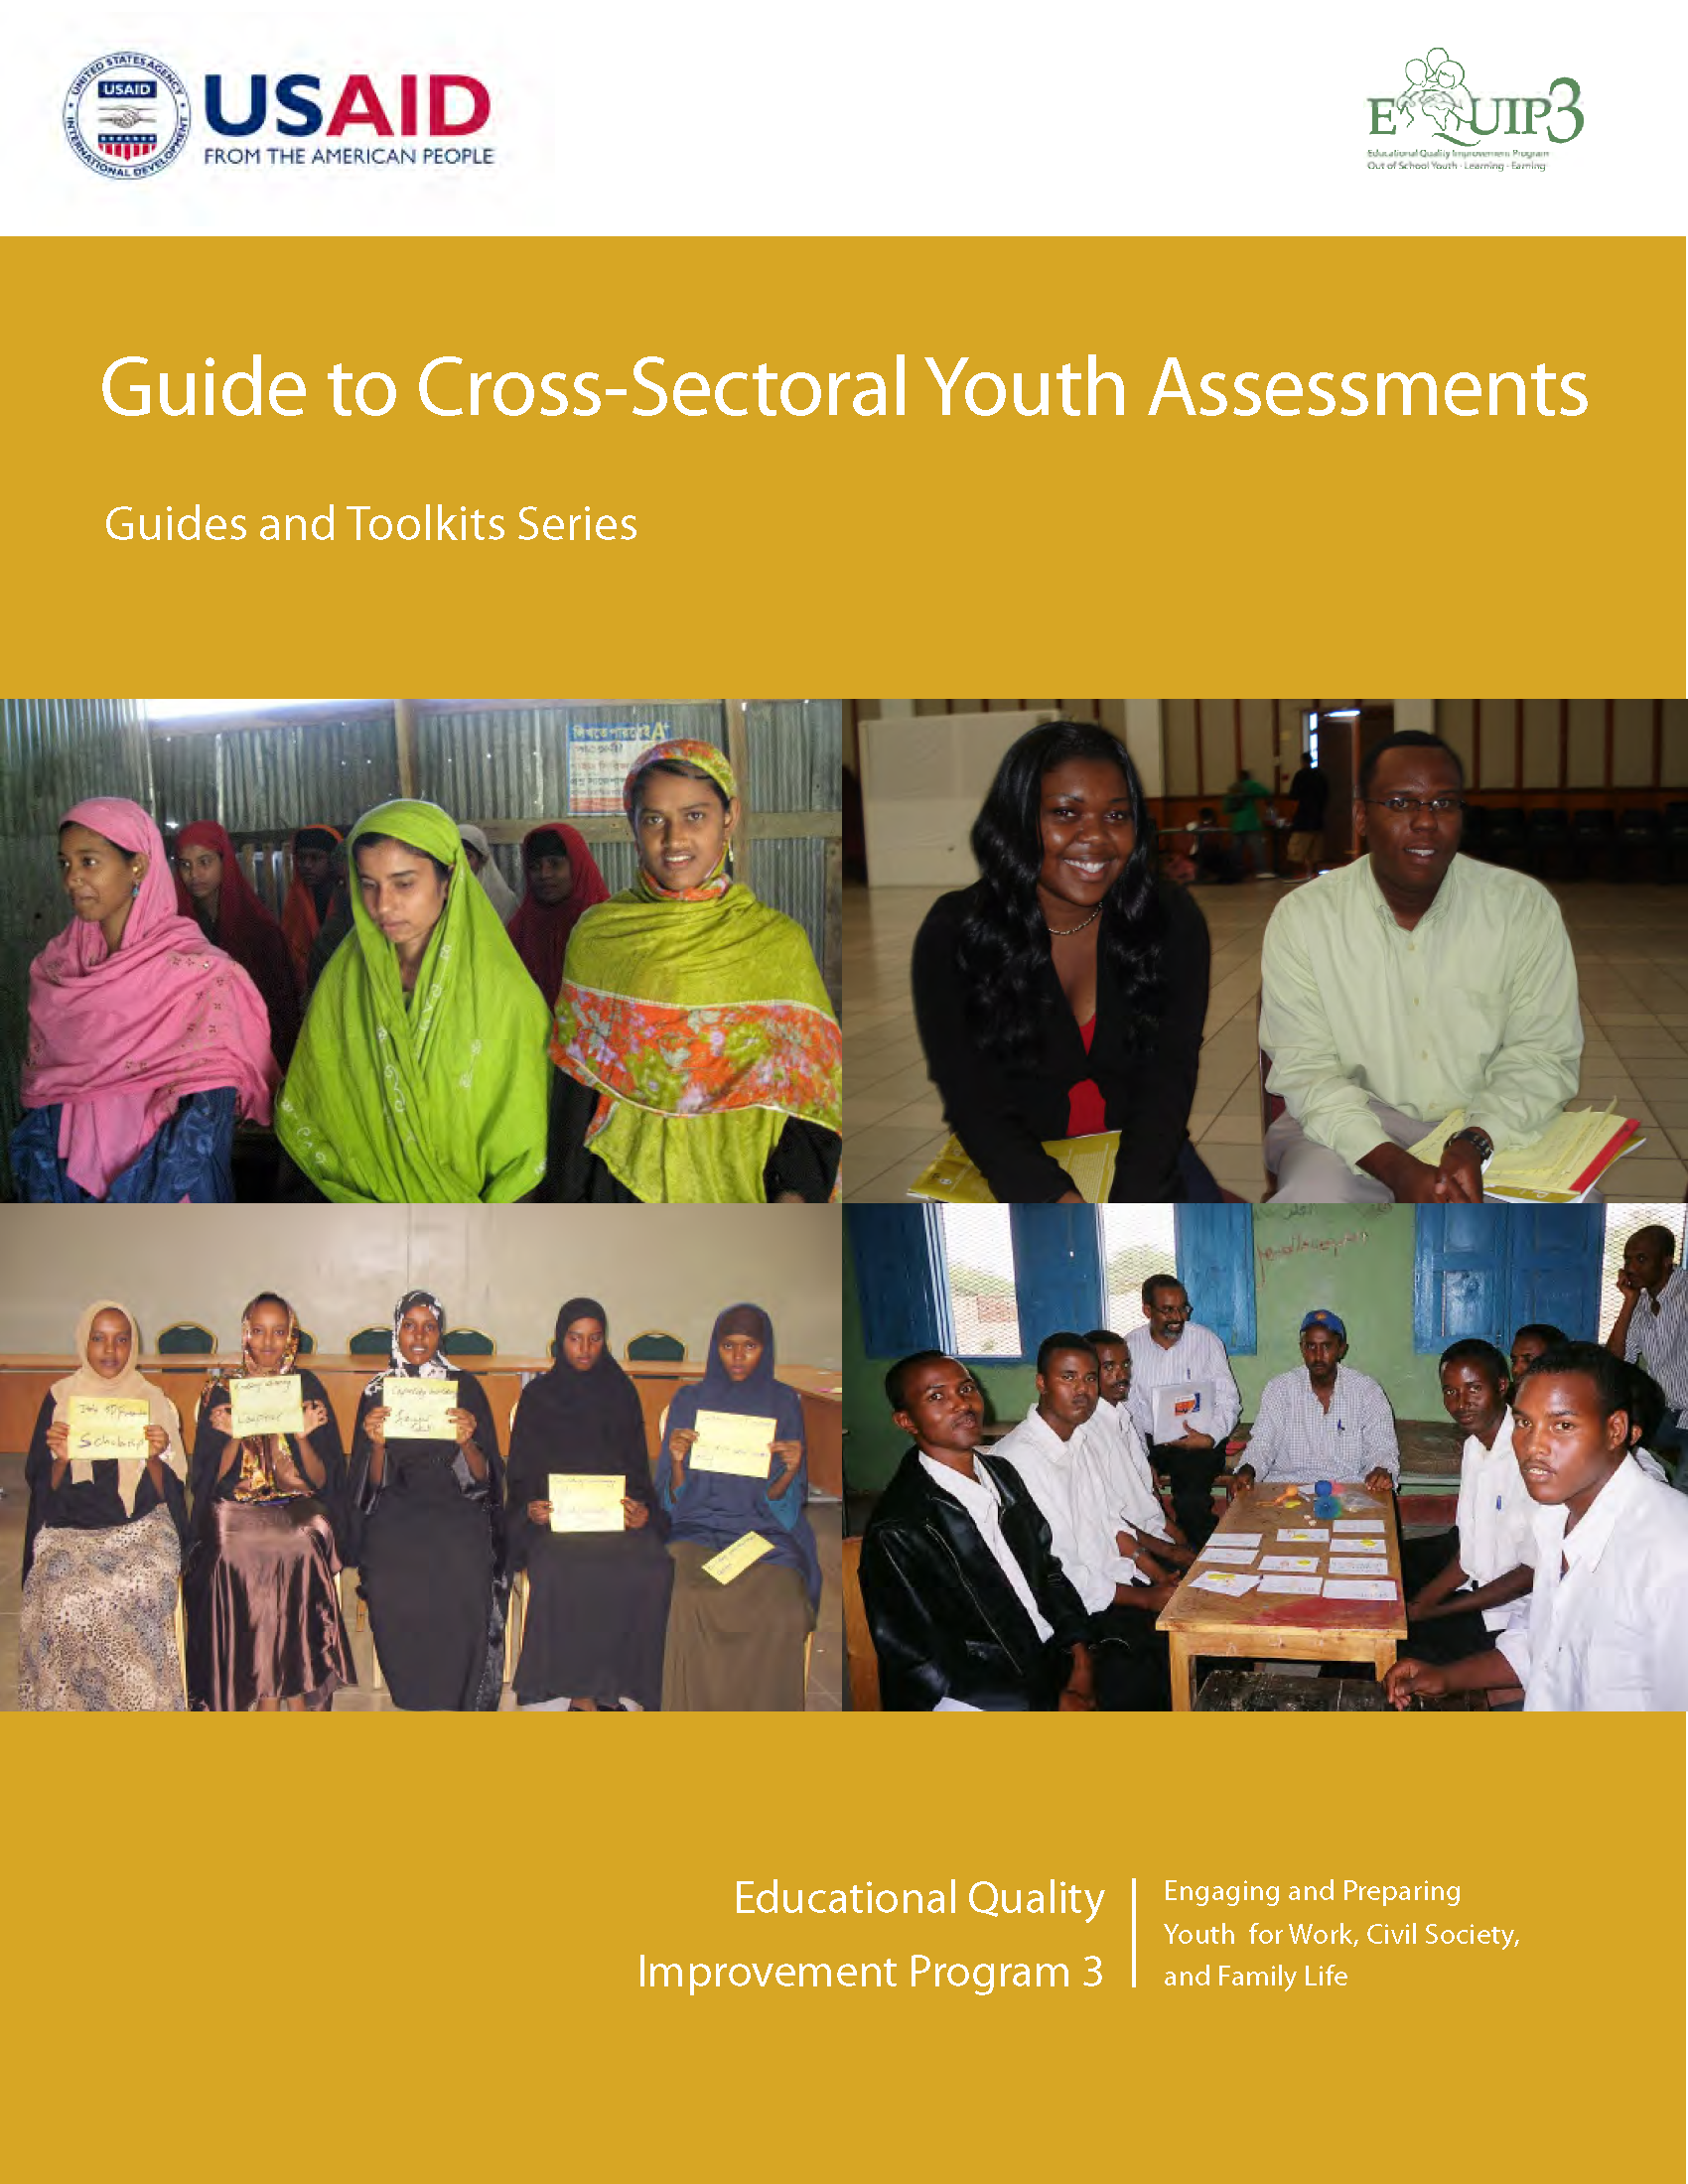 Page de couverture du Guide des évaluations intersectorielles des jeunes